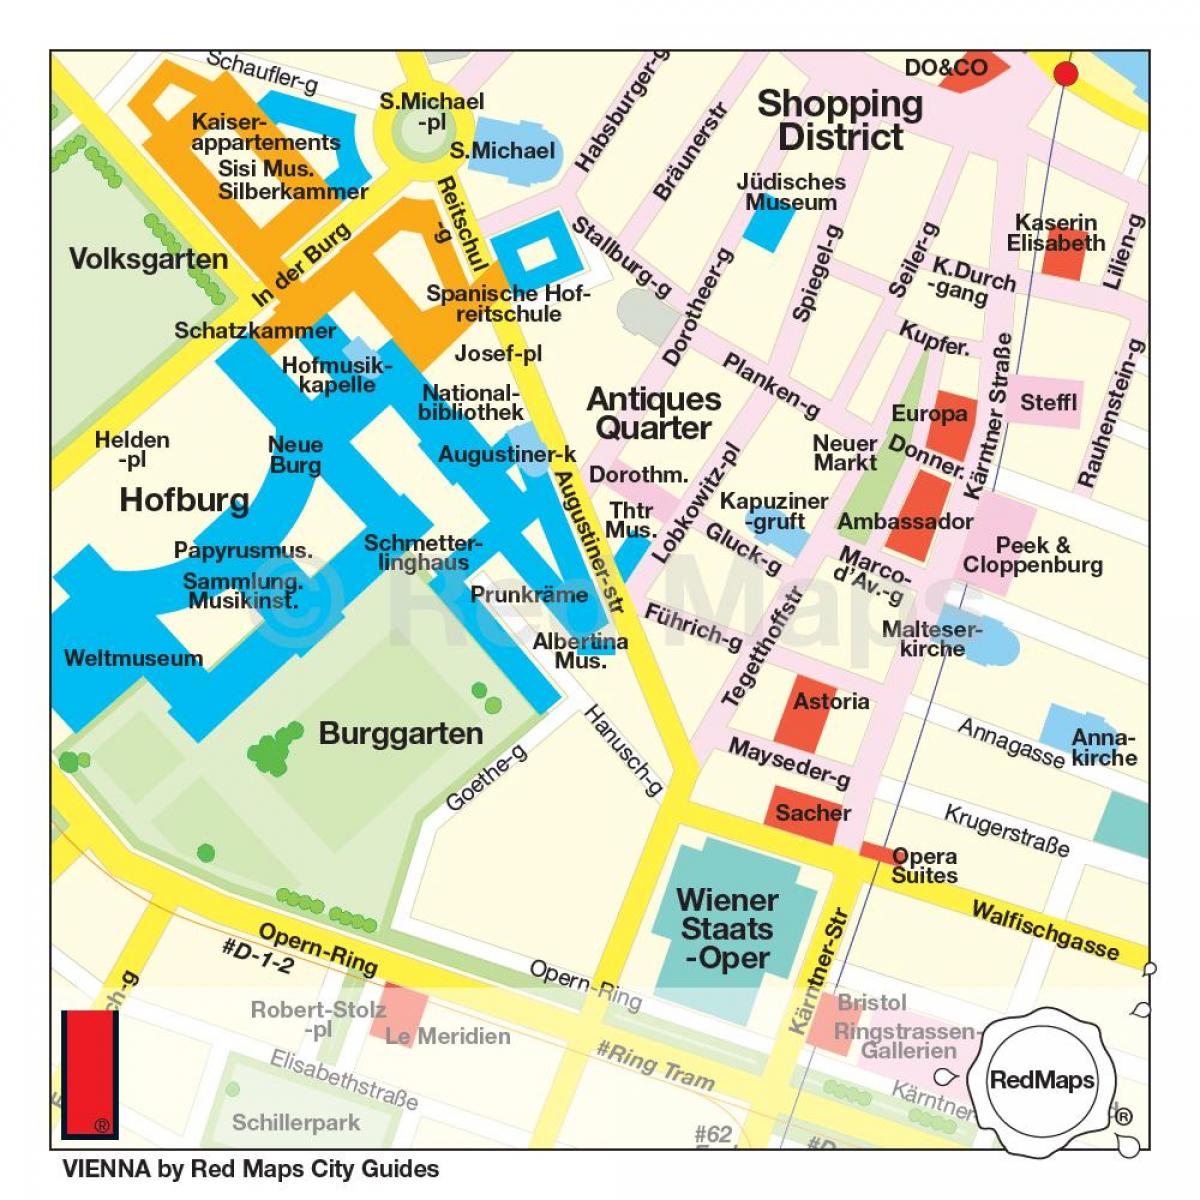 Karte von Wien-shopping